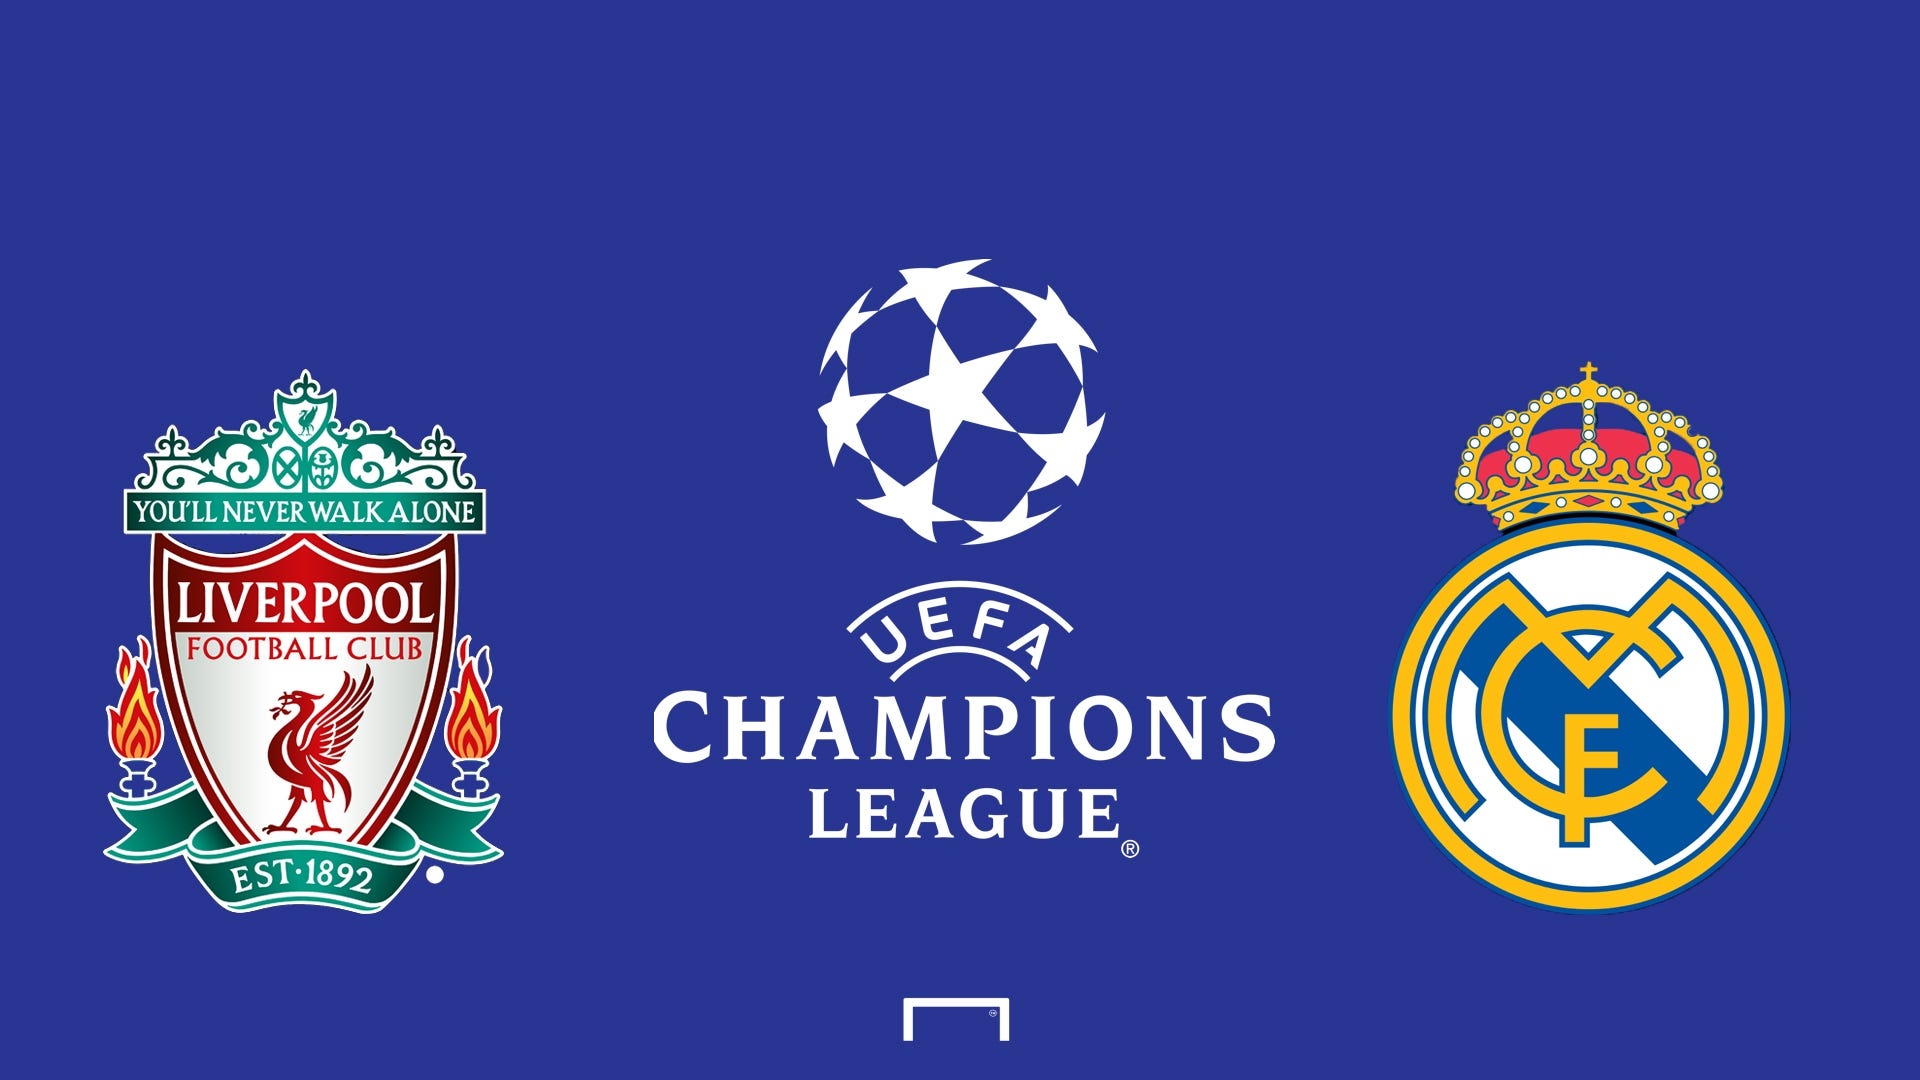 ريال مدريد وليفربول: مباشر لحظة بلحظة في نهائي دوري أبطال أوروبا | العربية  Goal.com